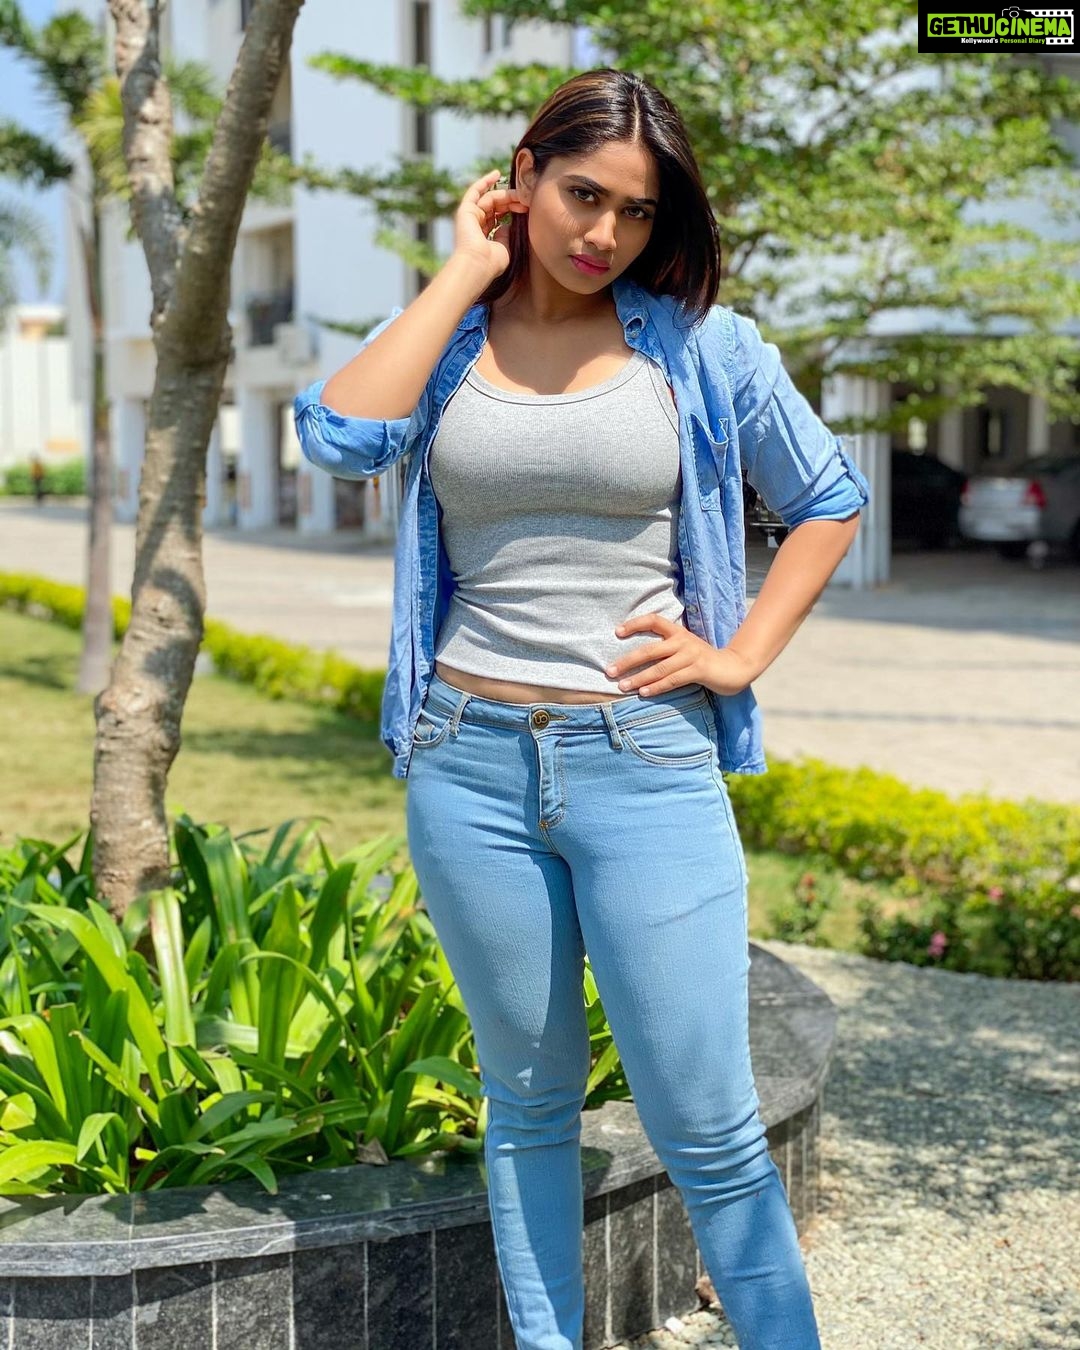 Shivani Narayanan - 330.3K Likes - Most Liked Instagram Photos